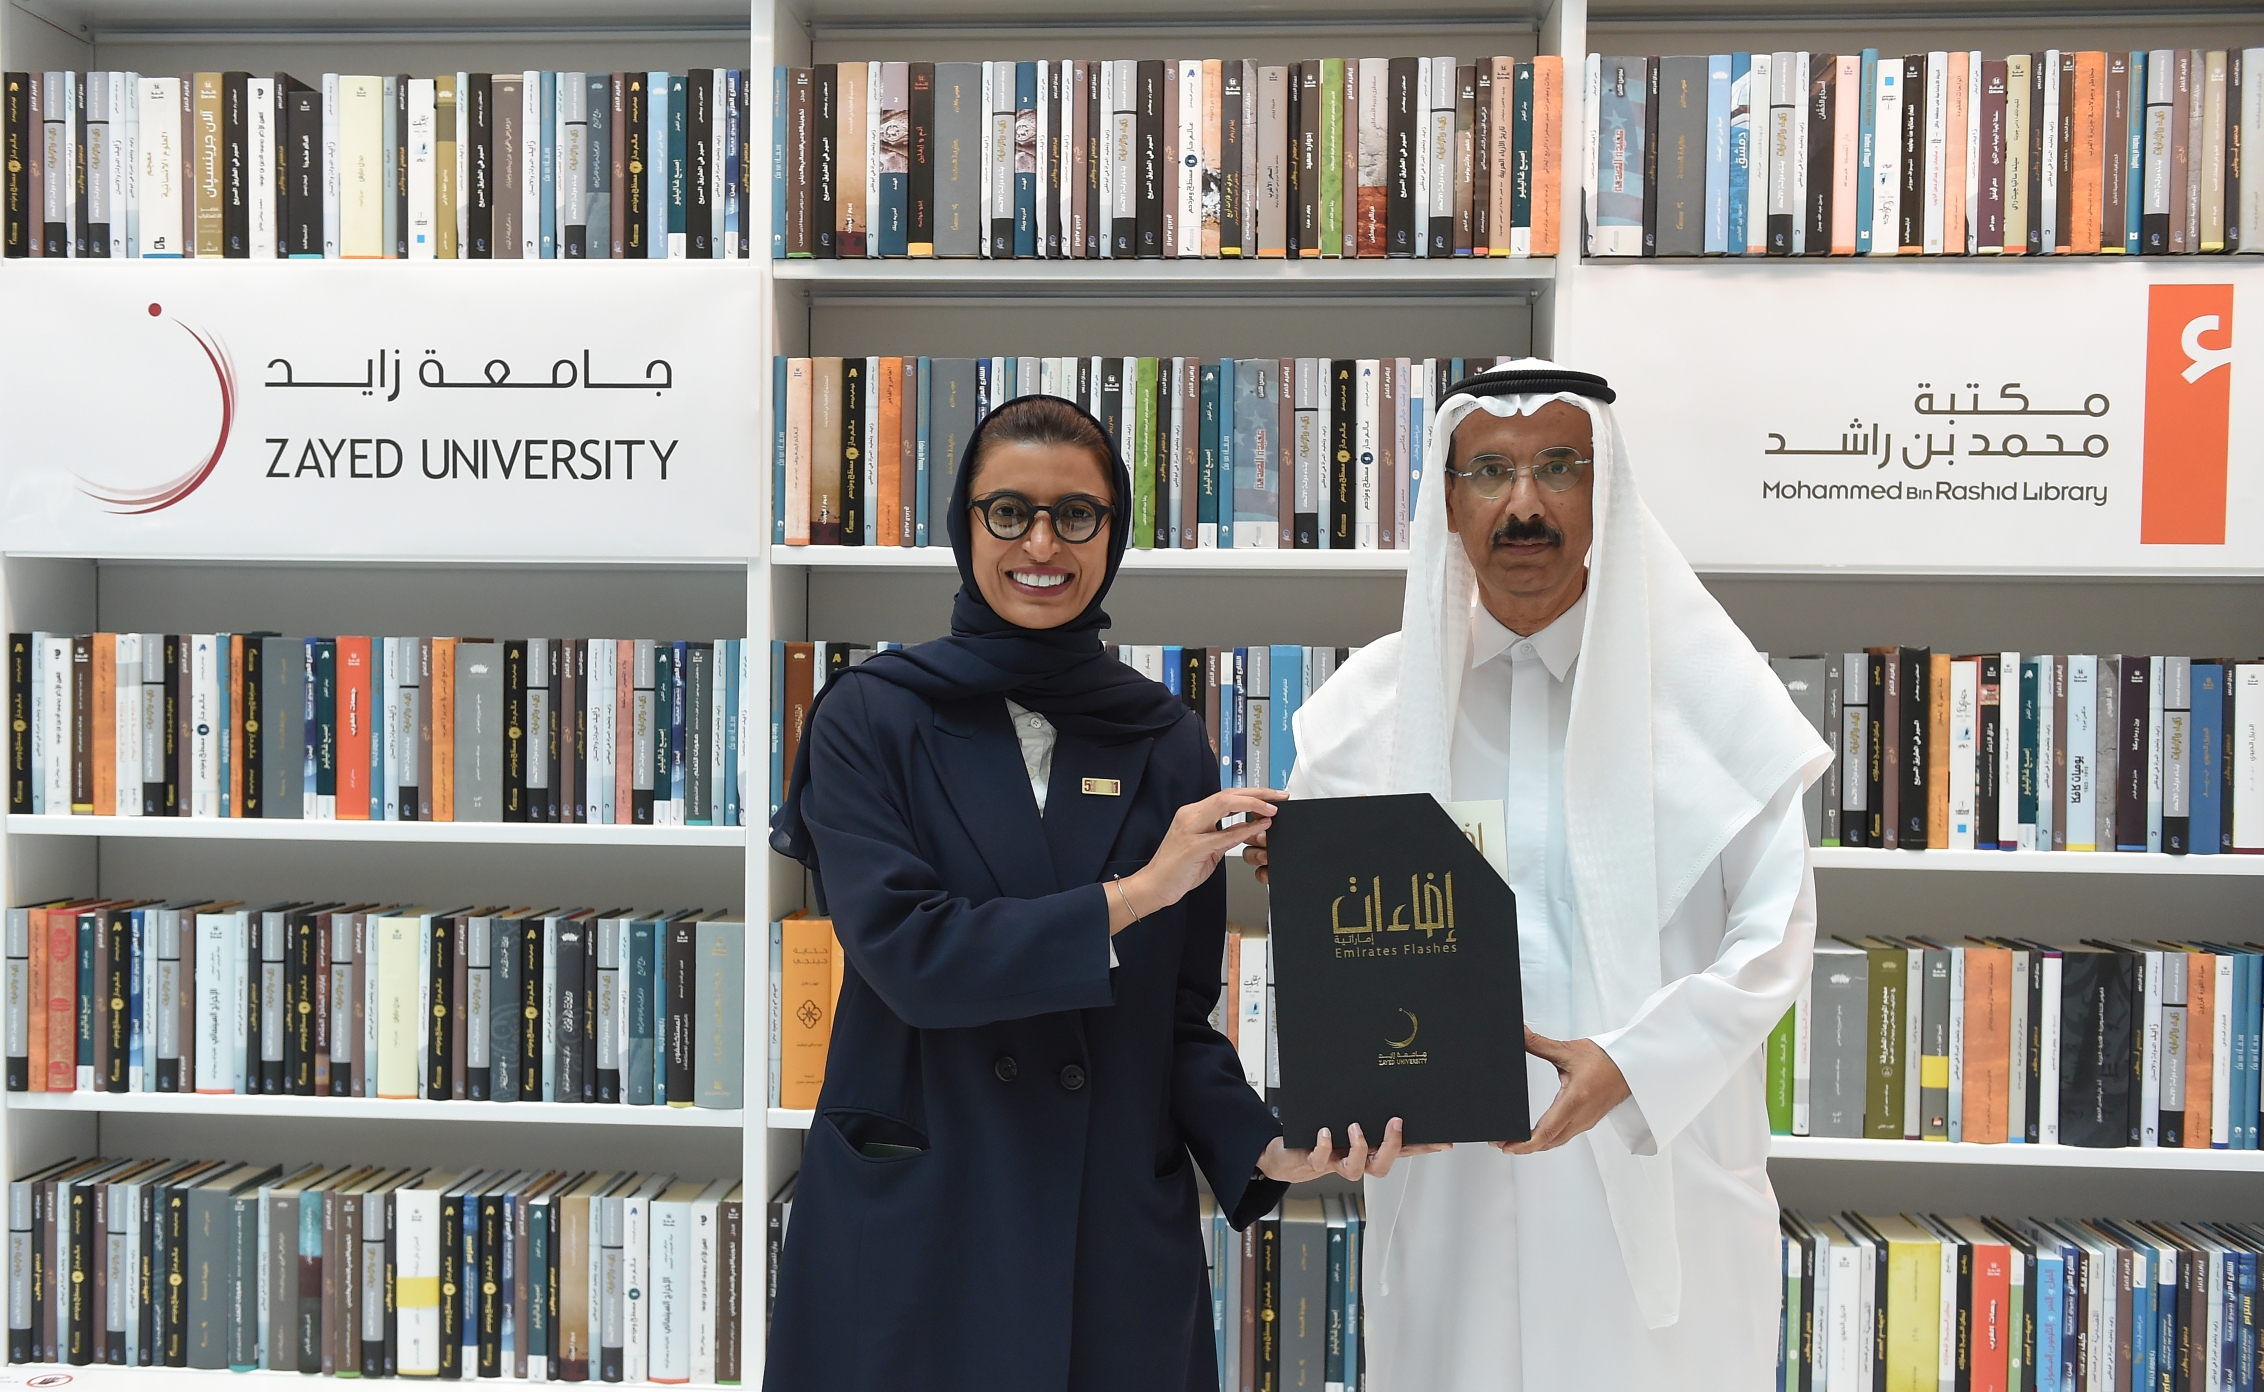 مكتبة محمد بن راشد توقع اتفاقية شراكة مع جامعة زايد لدعم وتشجيع البحث العلمي